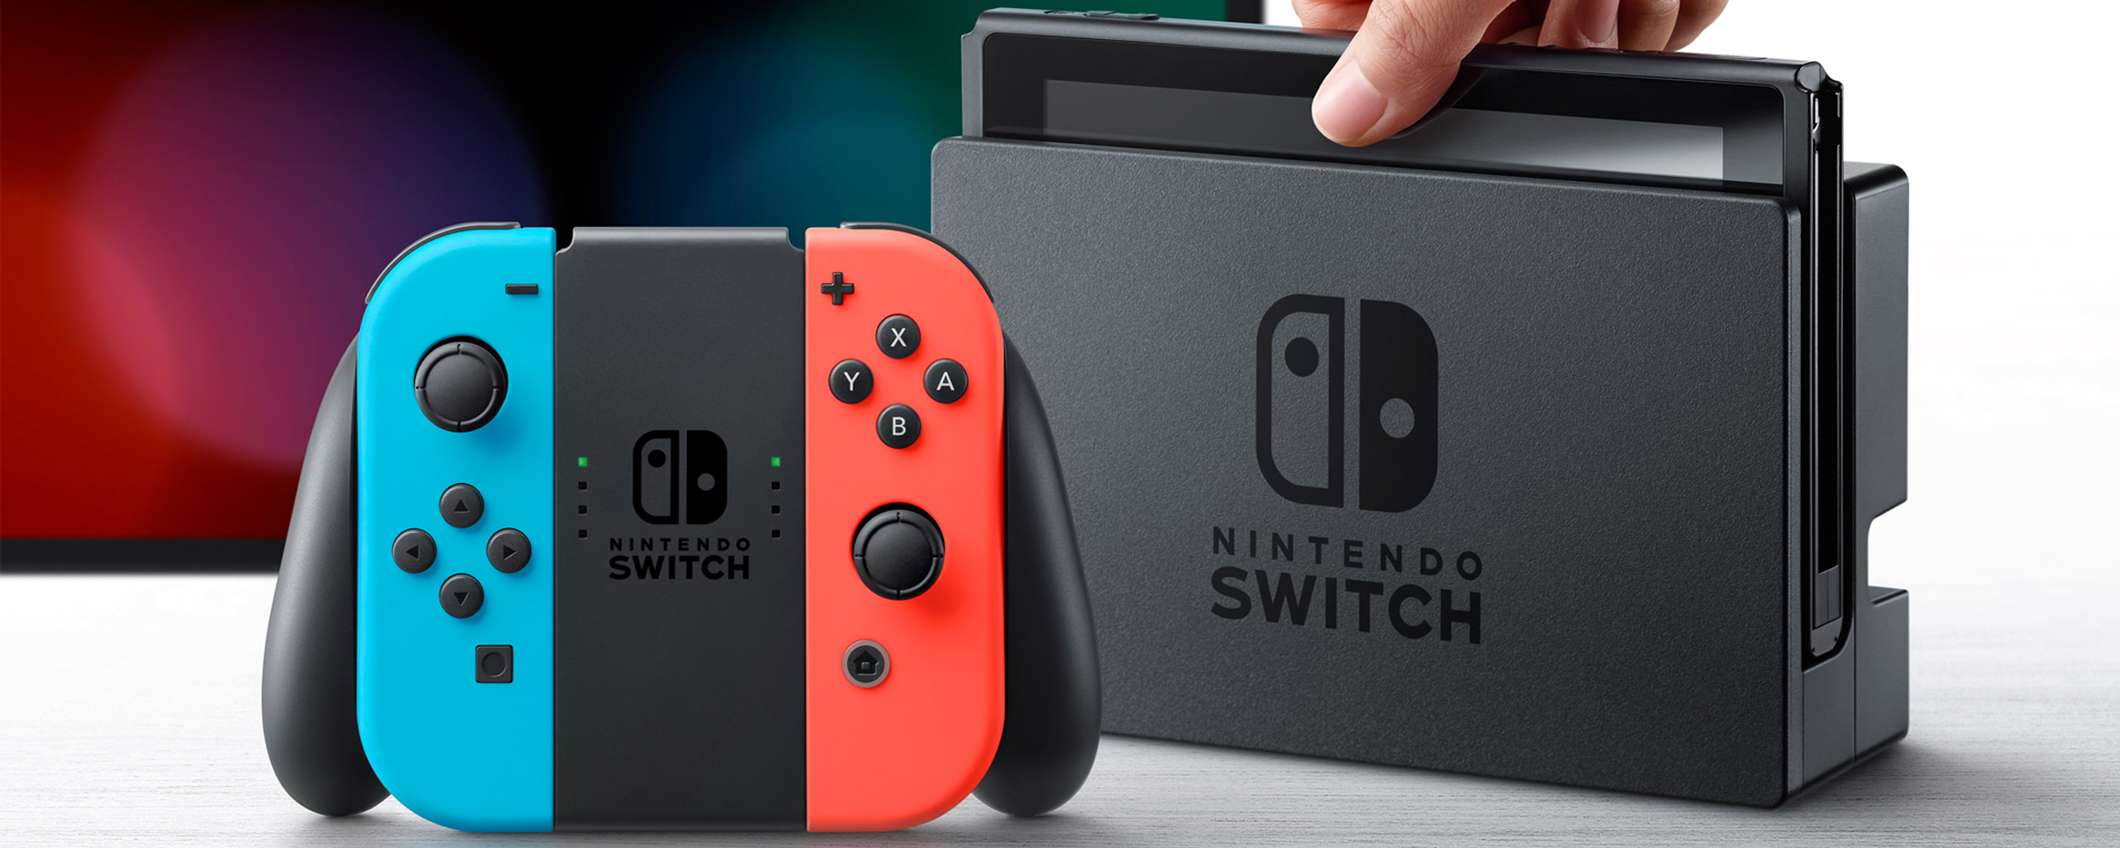 Nintendo Switch e Switch Lite: le differenze